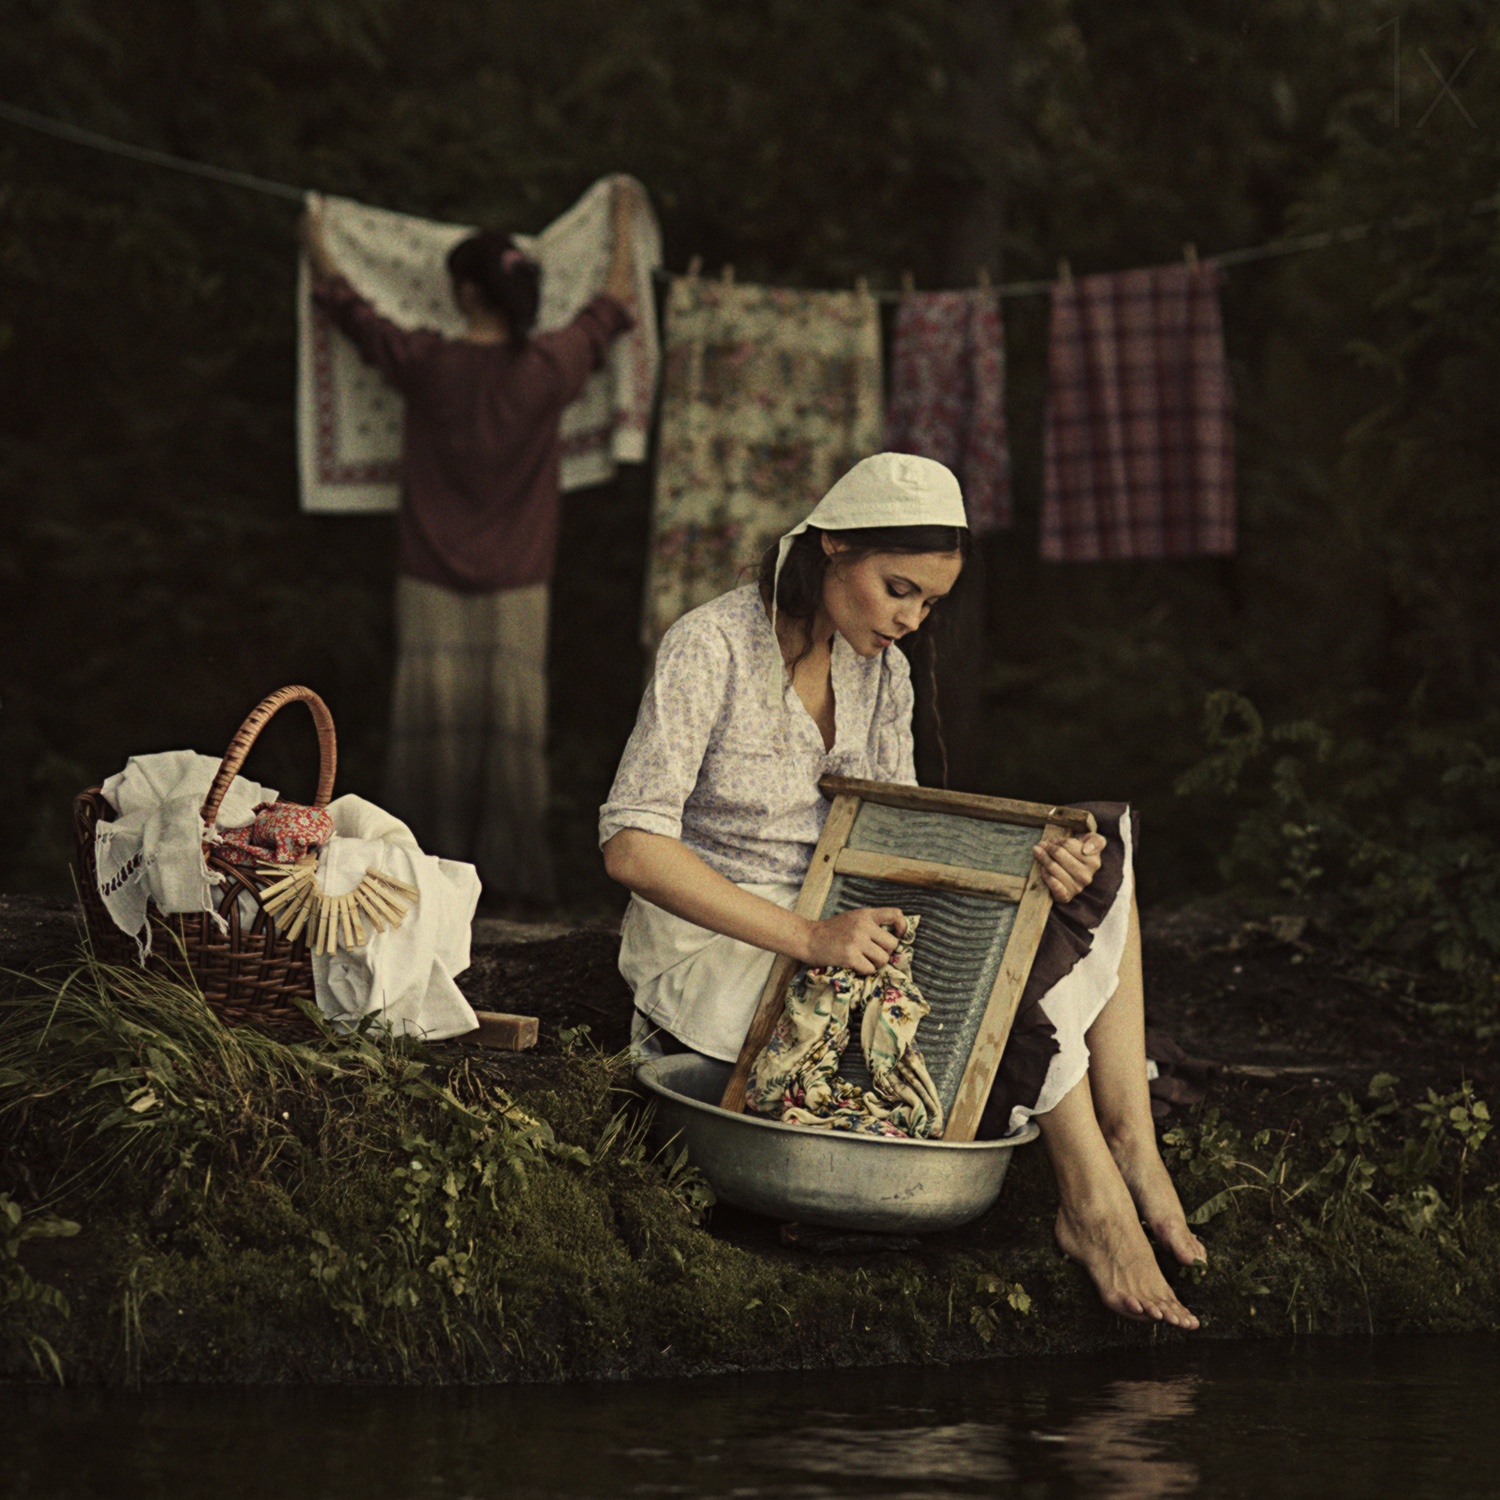 Стирают белье в реке. Фотограф Дэвид Дубницкий деревня. Фотограф Дэвид Дубницкий Прачечная.